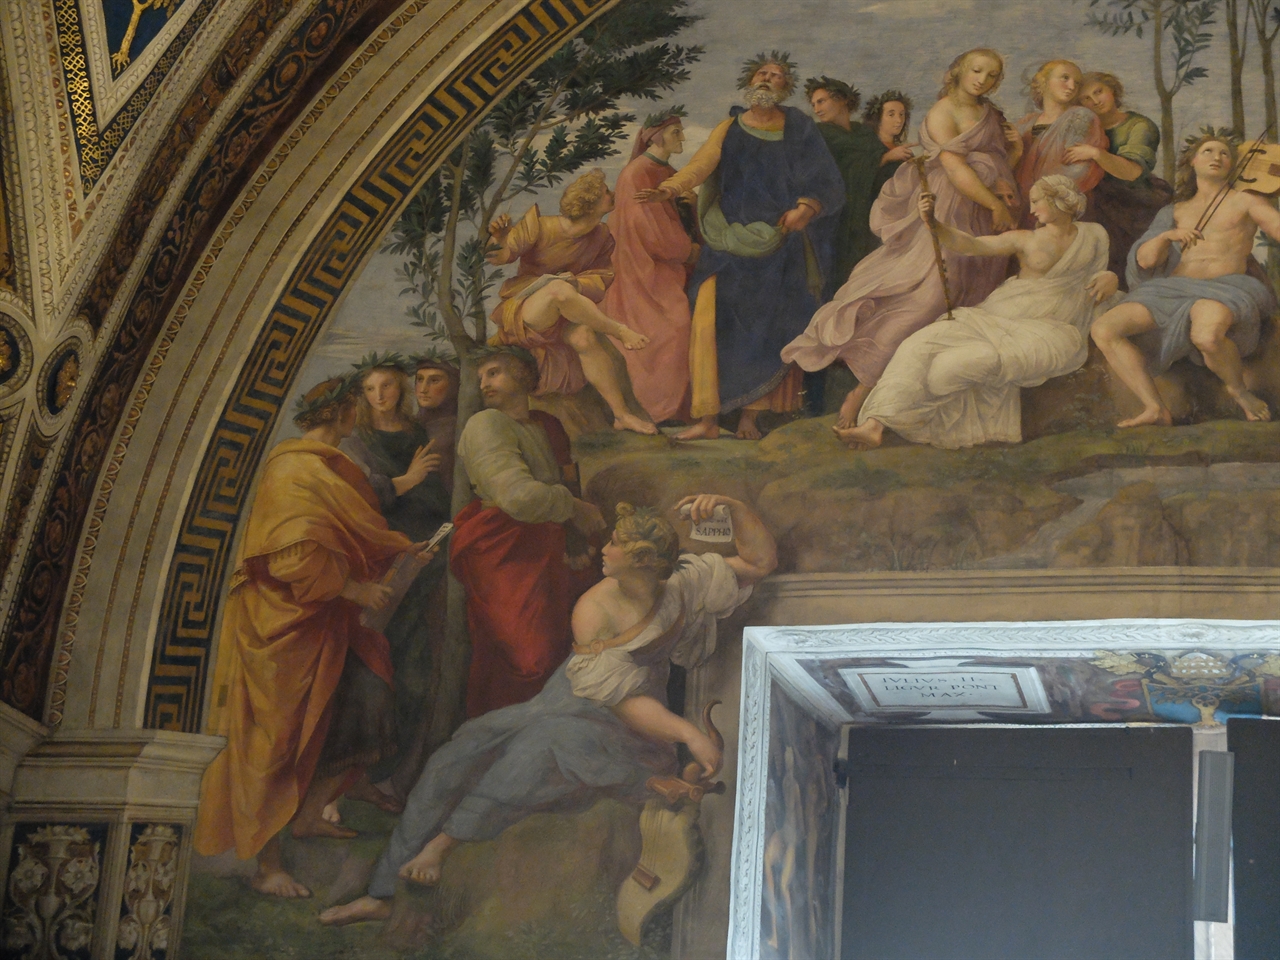 라파엘로, ‘파르나소스’(부분), 바티칸 박물관 서명의 방. 고대 그리스를 계승한 르네상스 인문주의자들인 단테와 복카치오의 모습이 보입니다. 